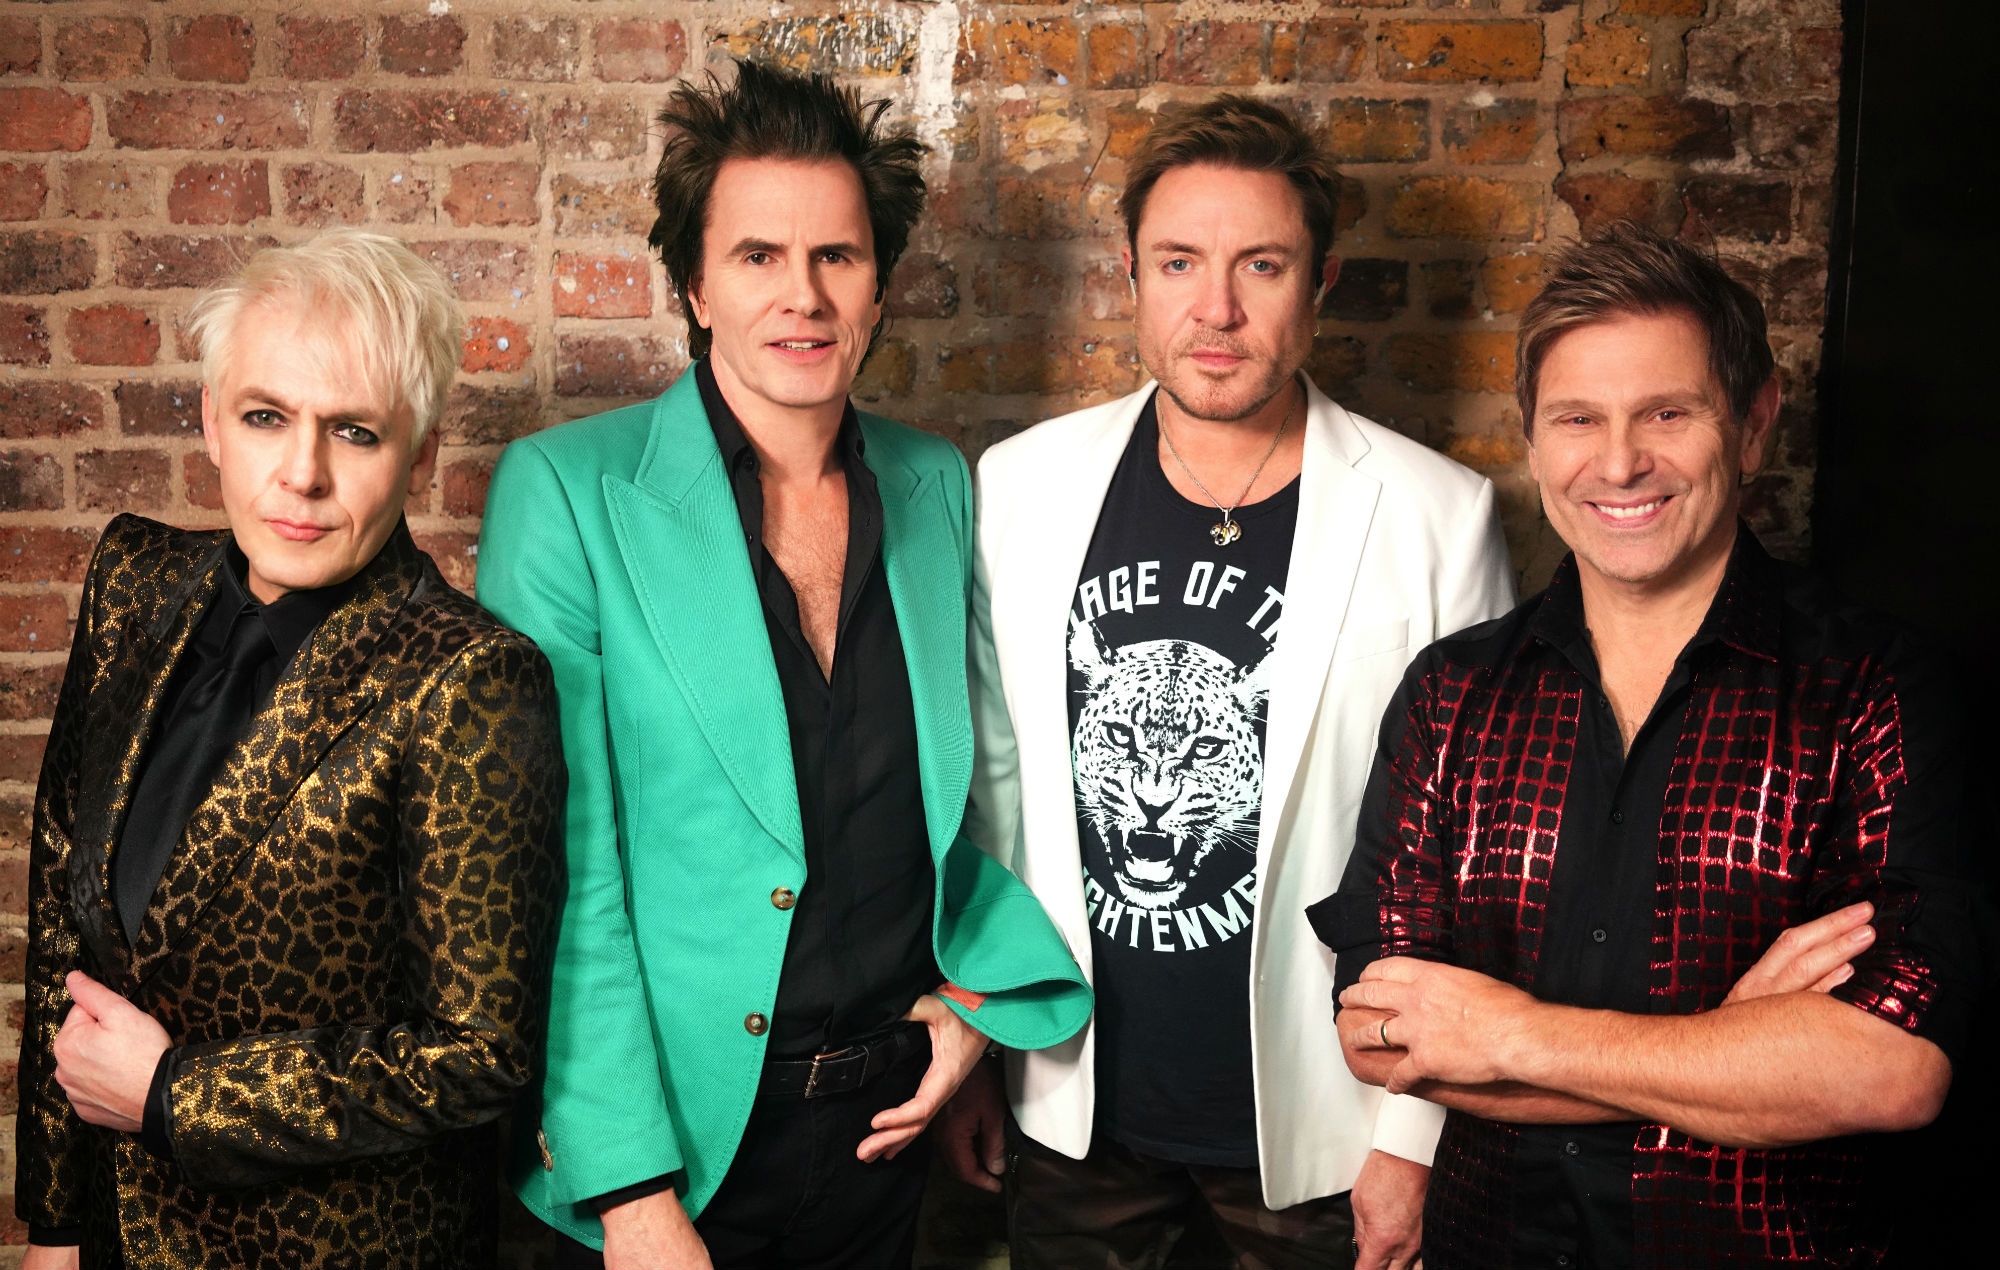 Escuchen la portada de Duran Duran de "Cinco años" de David Bowie